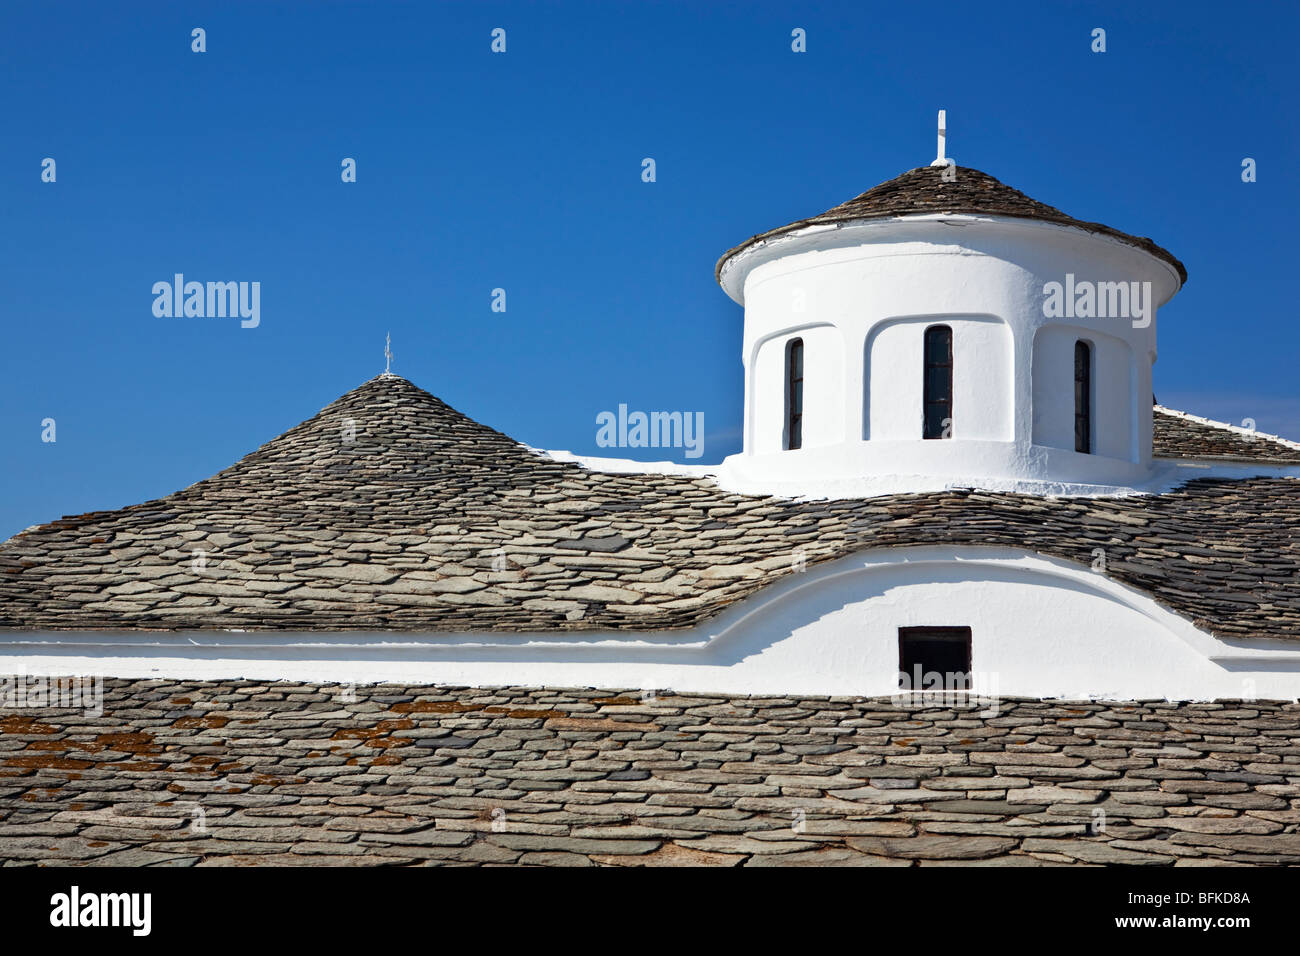 Traditionelle Fliesen Dach Skopelos Insel griechische Inseln Griechenland Stockfoto